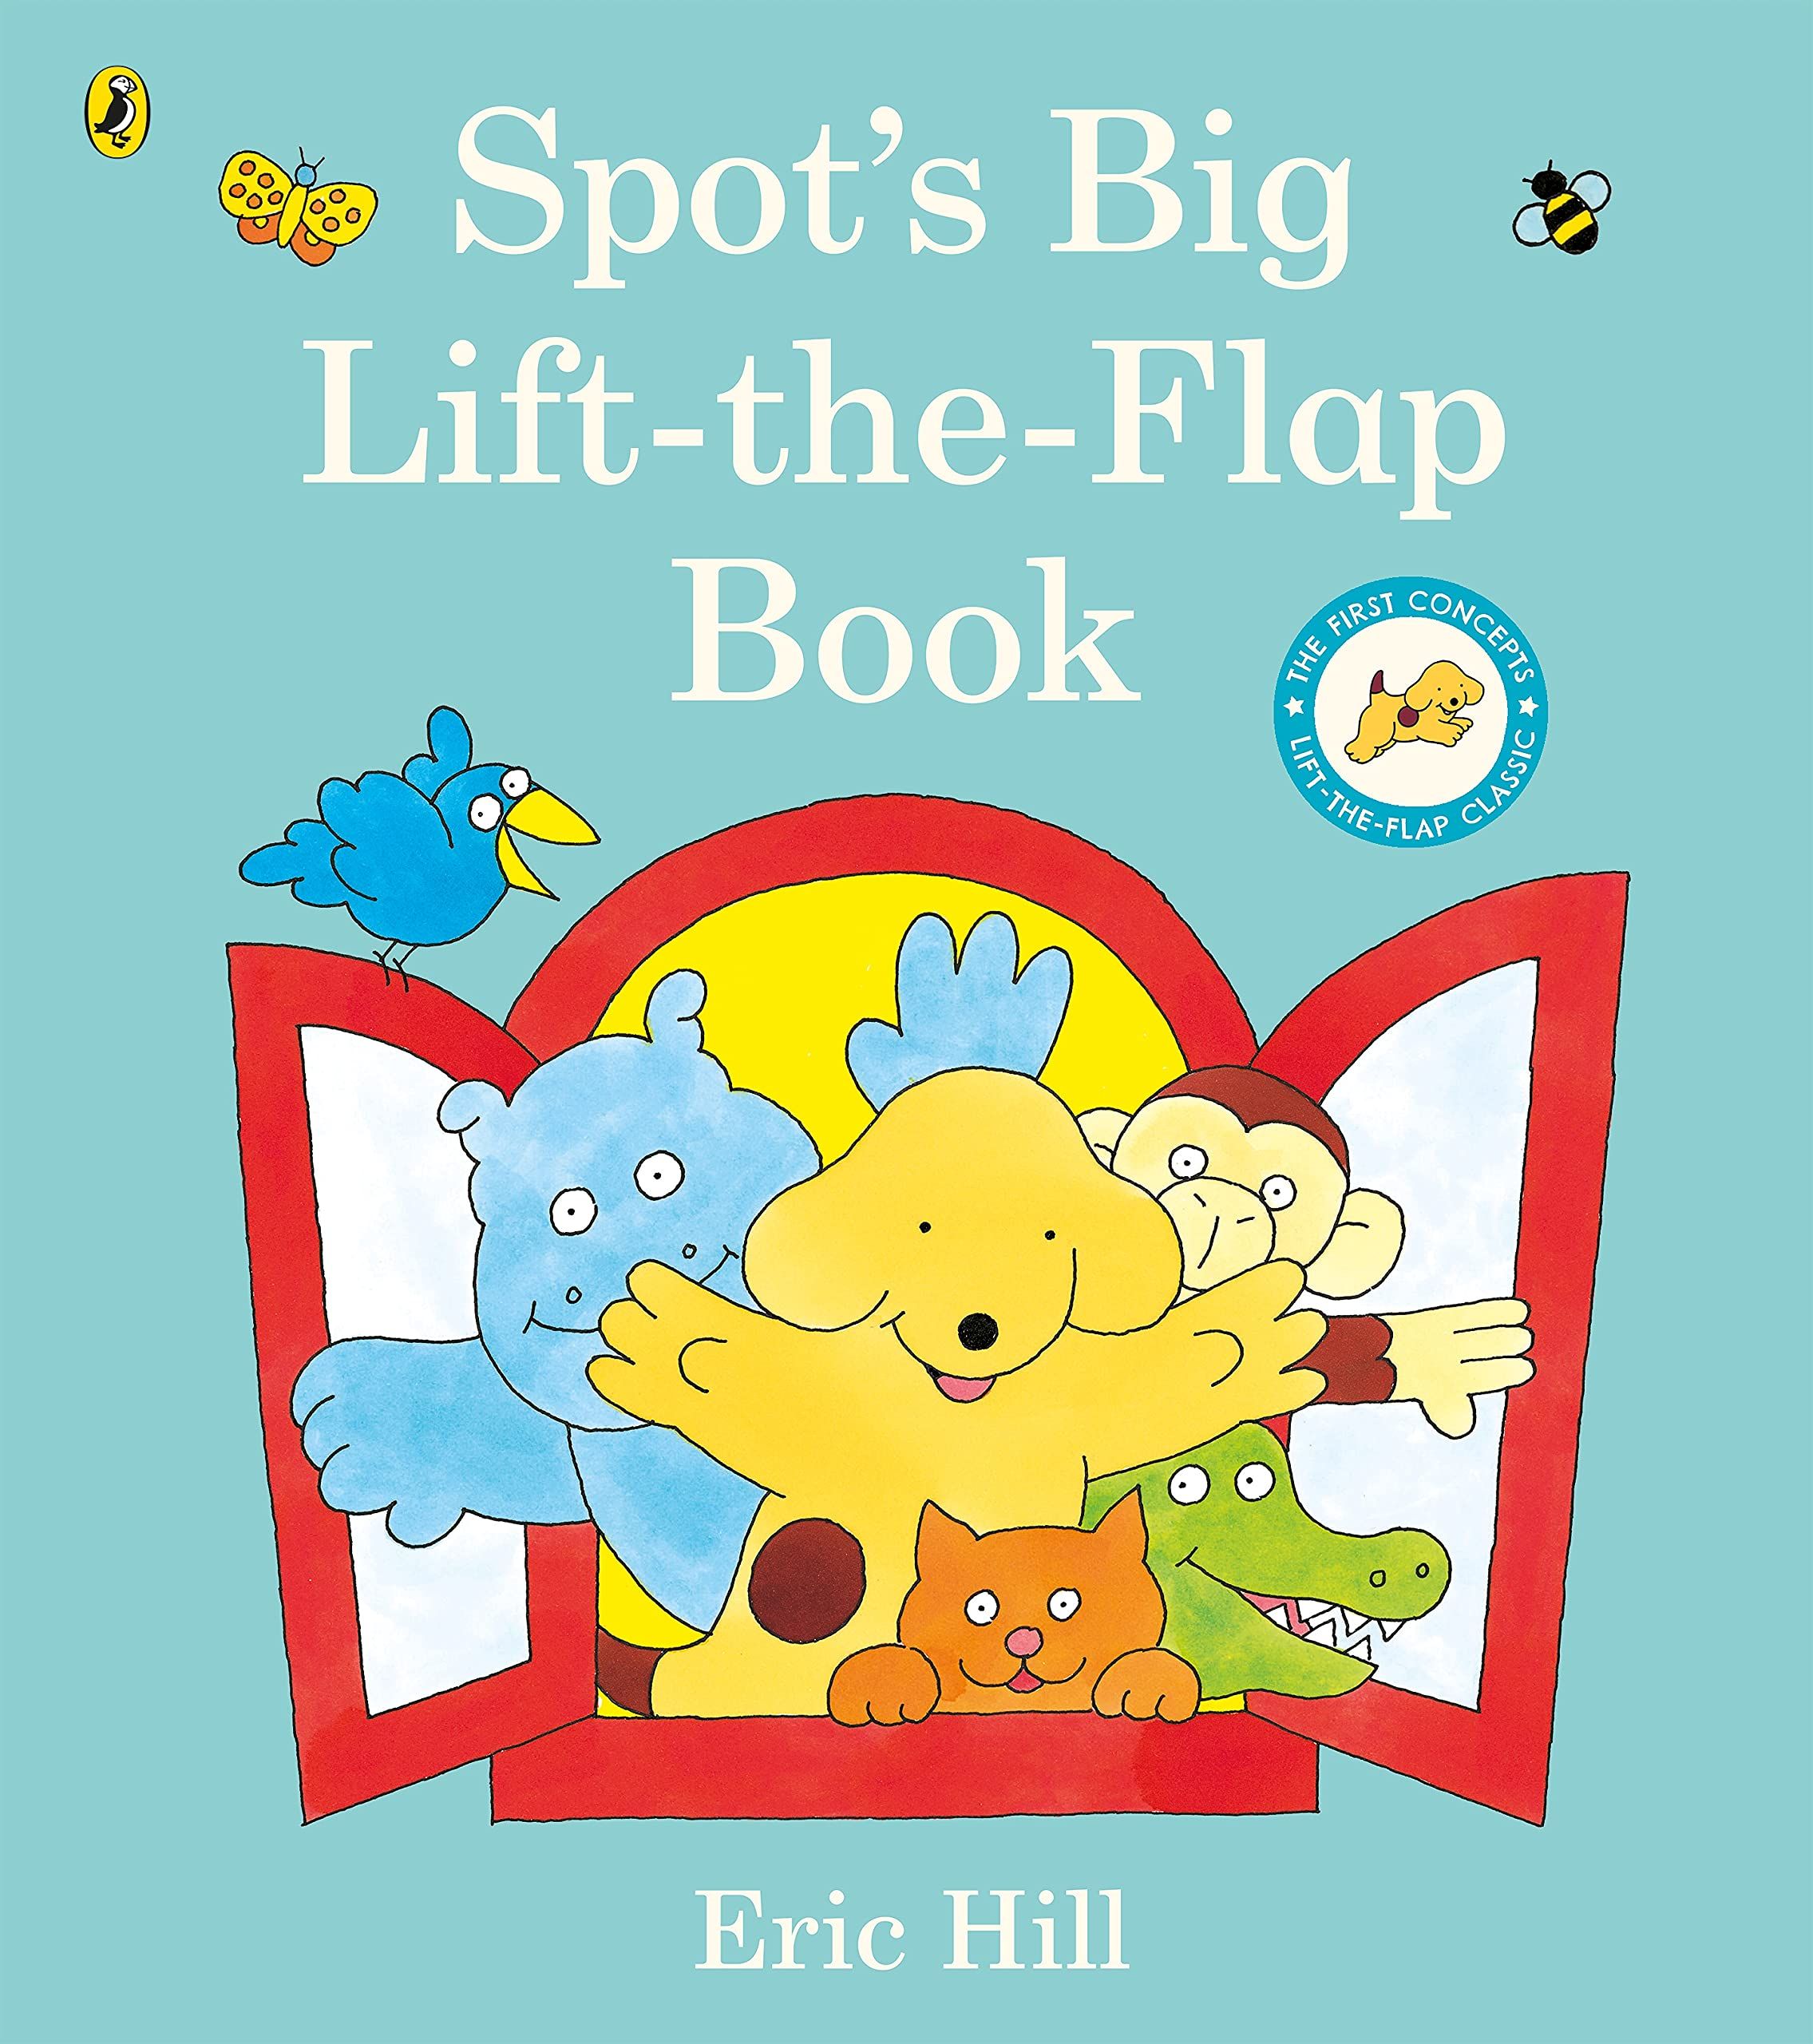 Spot's Big Lift-the-flap Book